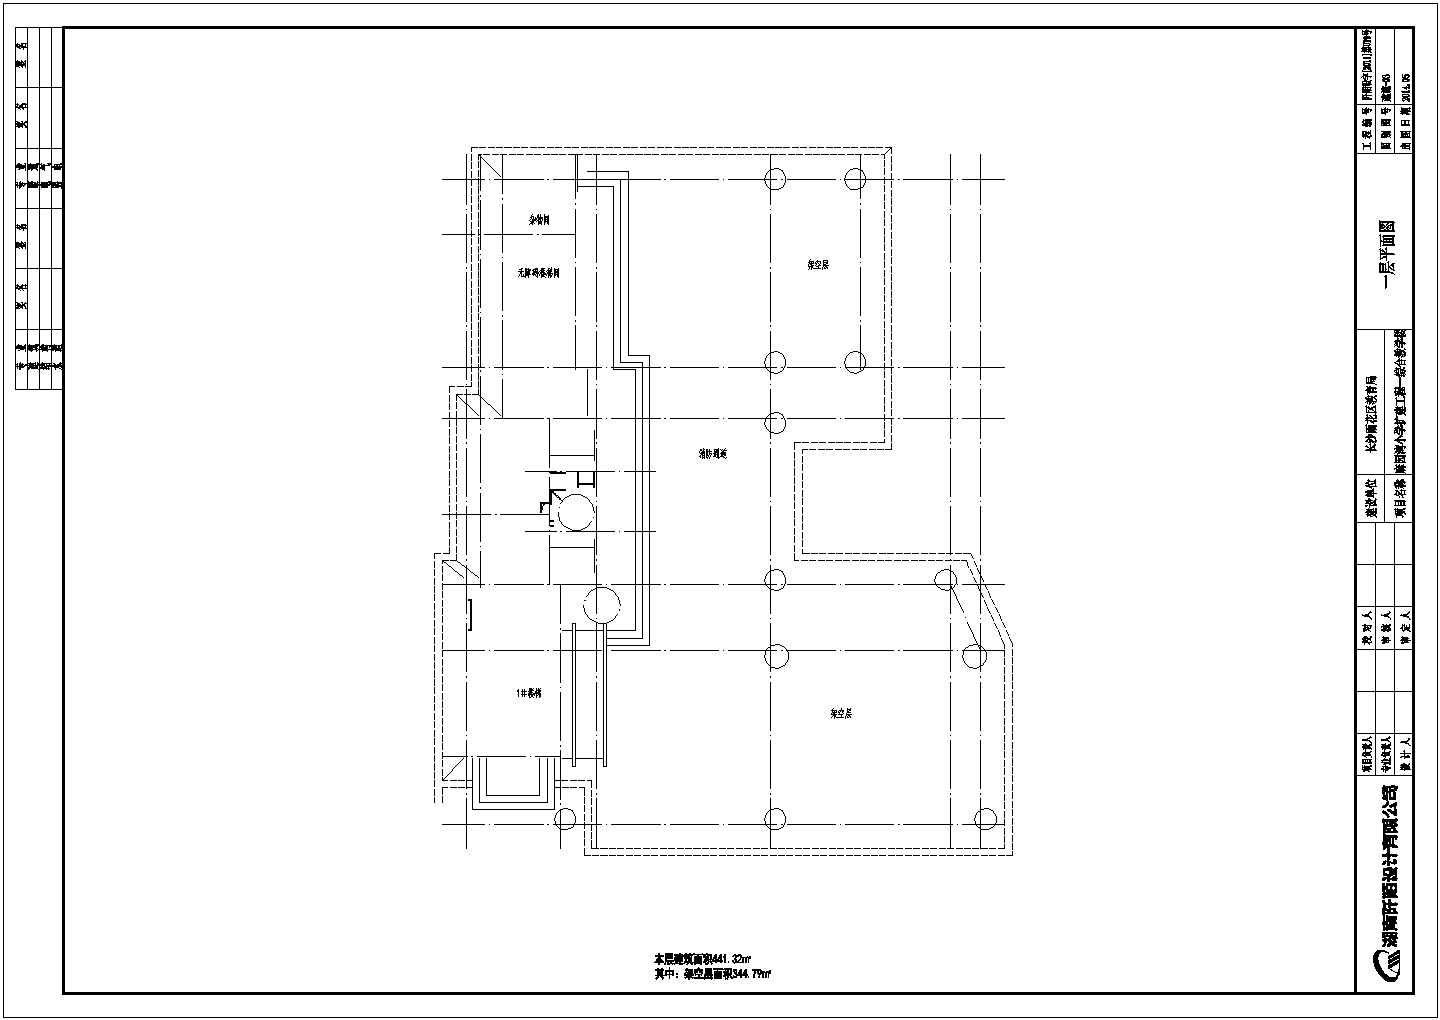 麻园湾小学综合楼施工项目招标文件、图纸及清单